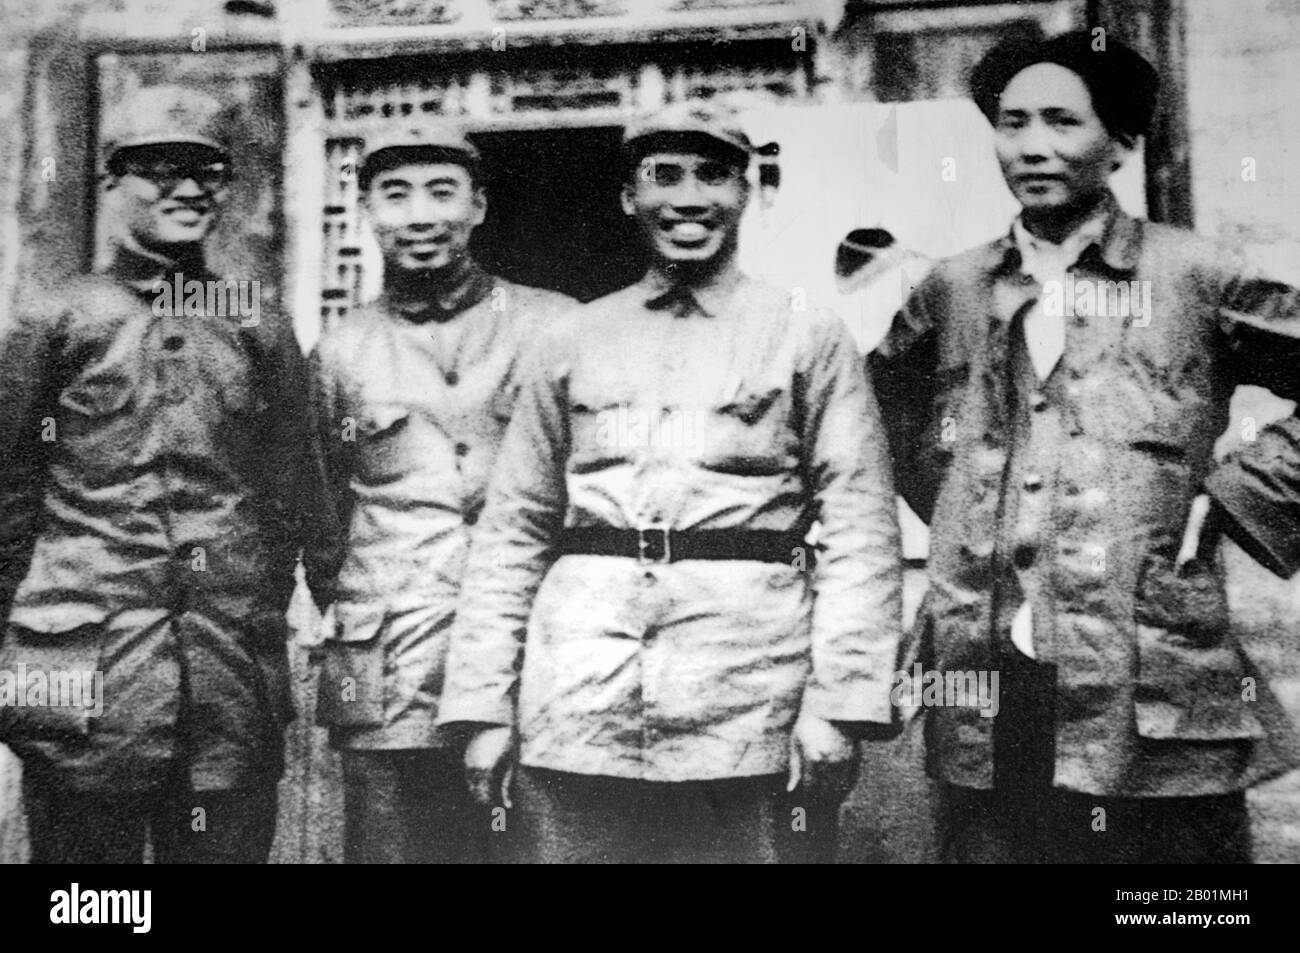 China: Bo Gu (links), Zhou Enlai (zweite links), Zhu de (rechts) und Mao Zedong (ganz rechts), Yan'an, Provinz Shaanxi, 1937. Mao Zedong (* 26. Dezember 1893 bis 9. September 1976), auch als Mao TSE-tung transliteriert, war ein chinesischer kommunistischer Revolutionär, Guerilla-Stratege, Autor, politischer Theoretiker und Führer der chinesischen Revolution. Er wird allgemein als Vorsitzender Mao bezeichnet und war der Architekt der Volksrepublik China (VR China) von ihrer Gründung im Jahr 1949 und hatte bis zu seinem Tod im Jahr 1976 die autoritäre Kontrolle über die Nation. Stockfoto